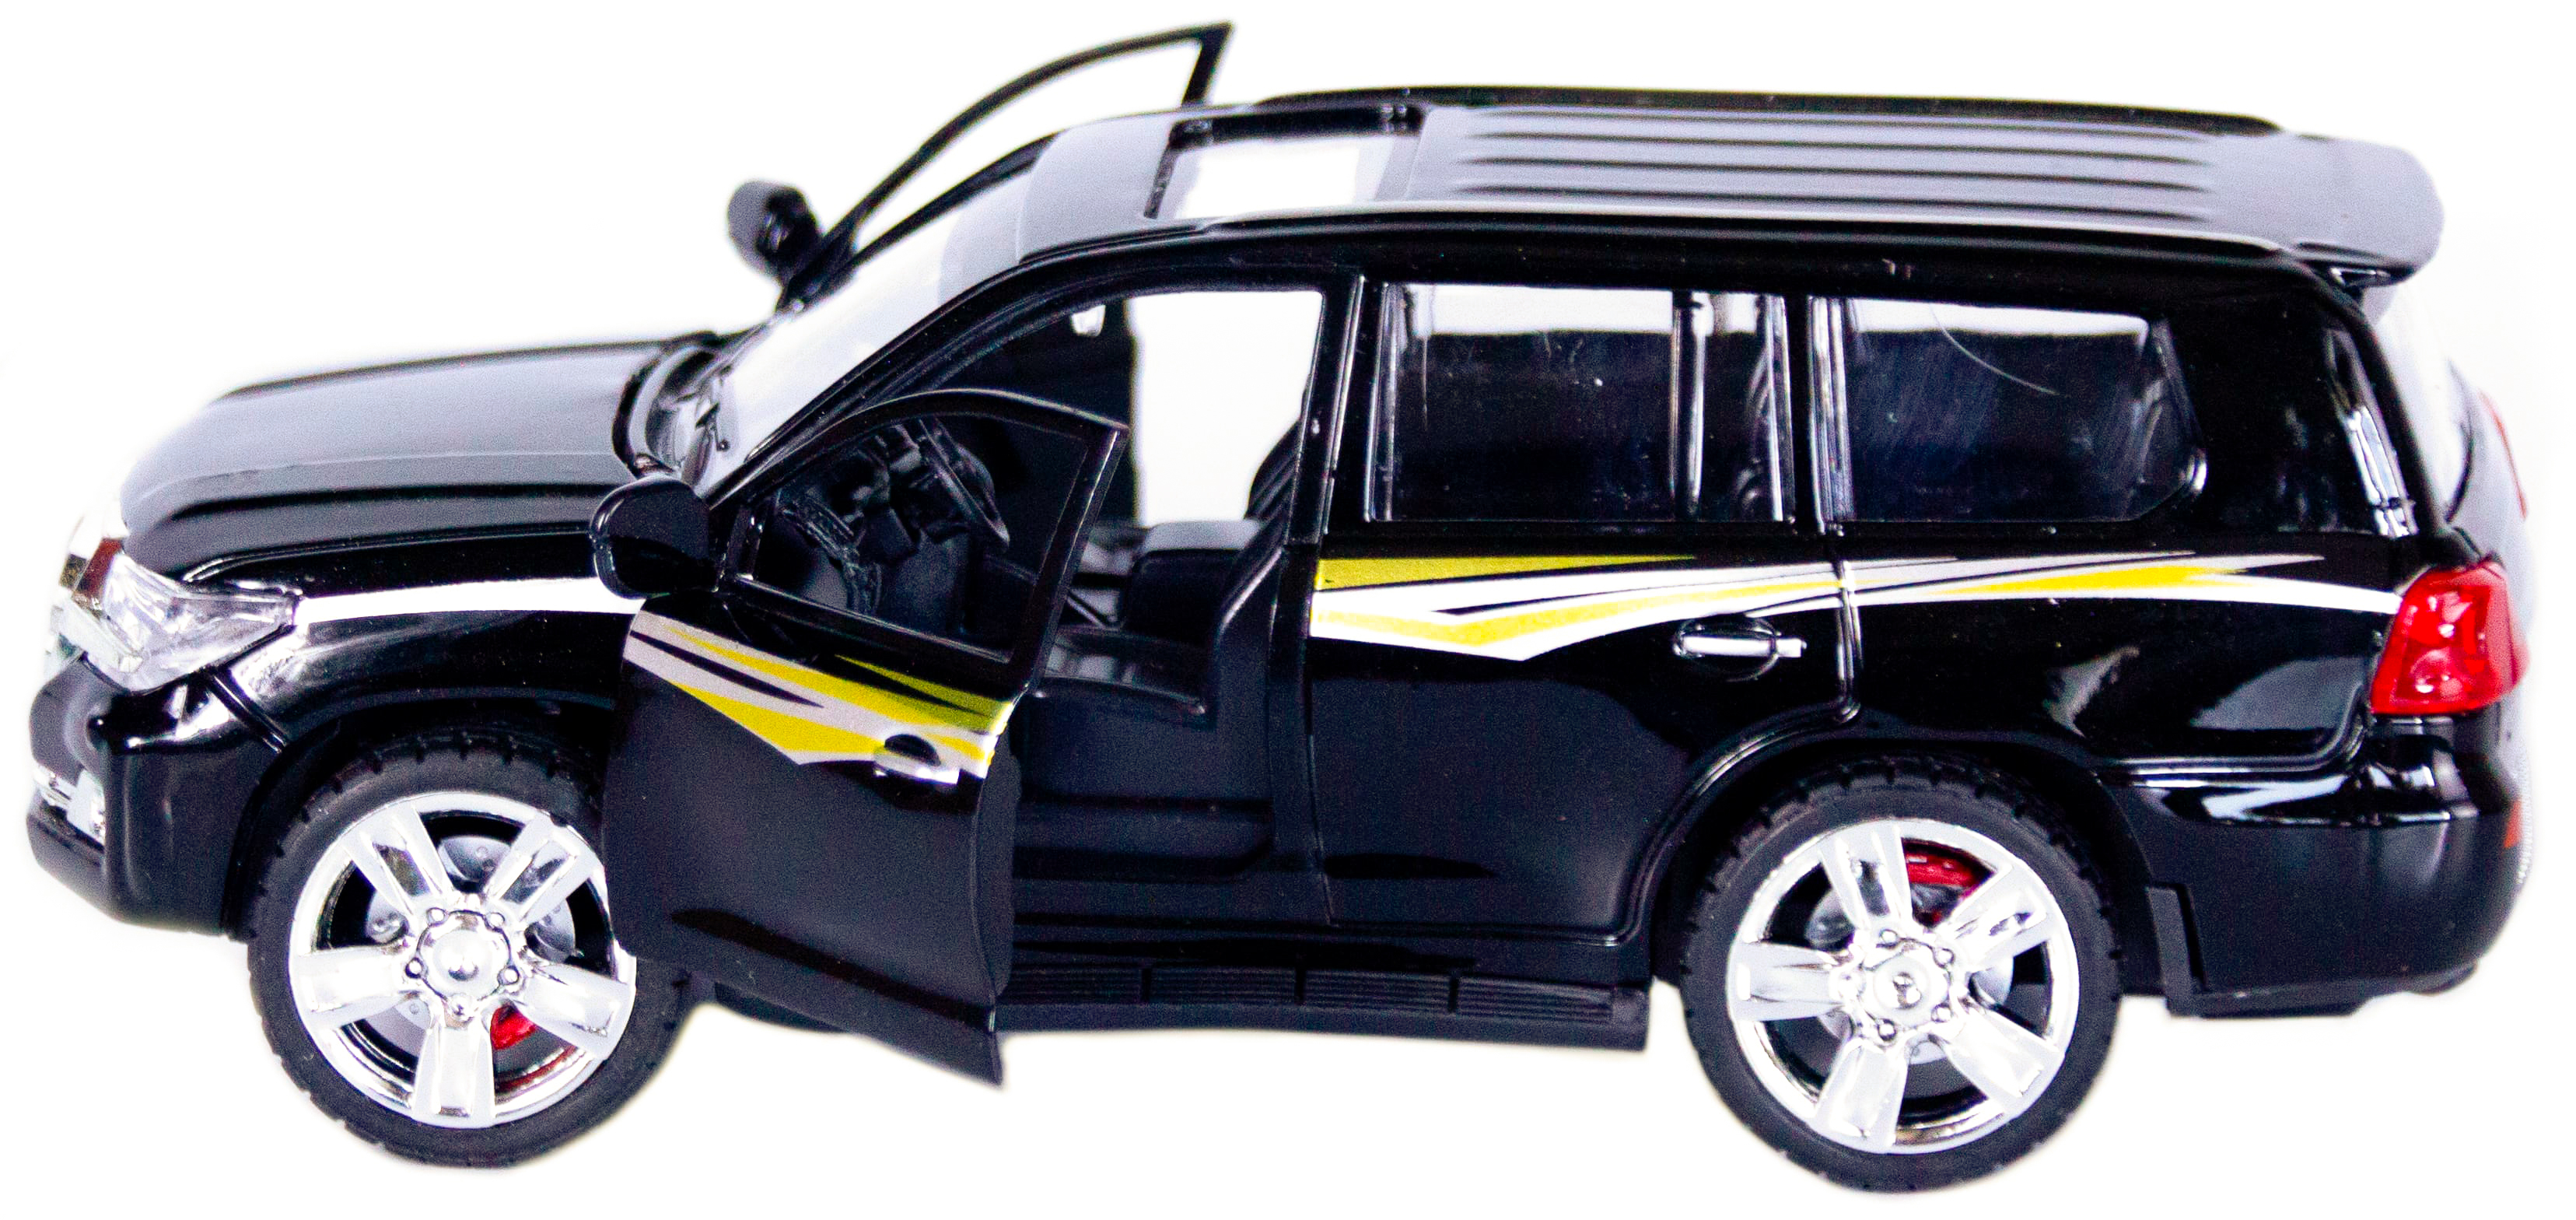 Металлическая машинка XLG 1:24 «Toyota Land Cruiser 200» 18 см. M923V инерционная, свет, звук / Черный